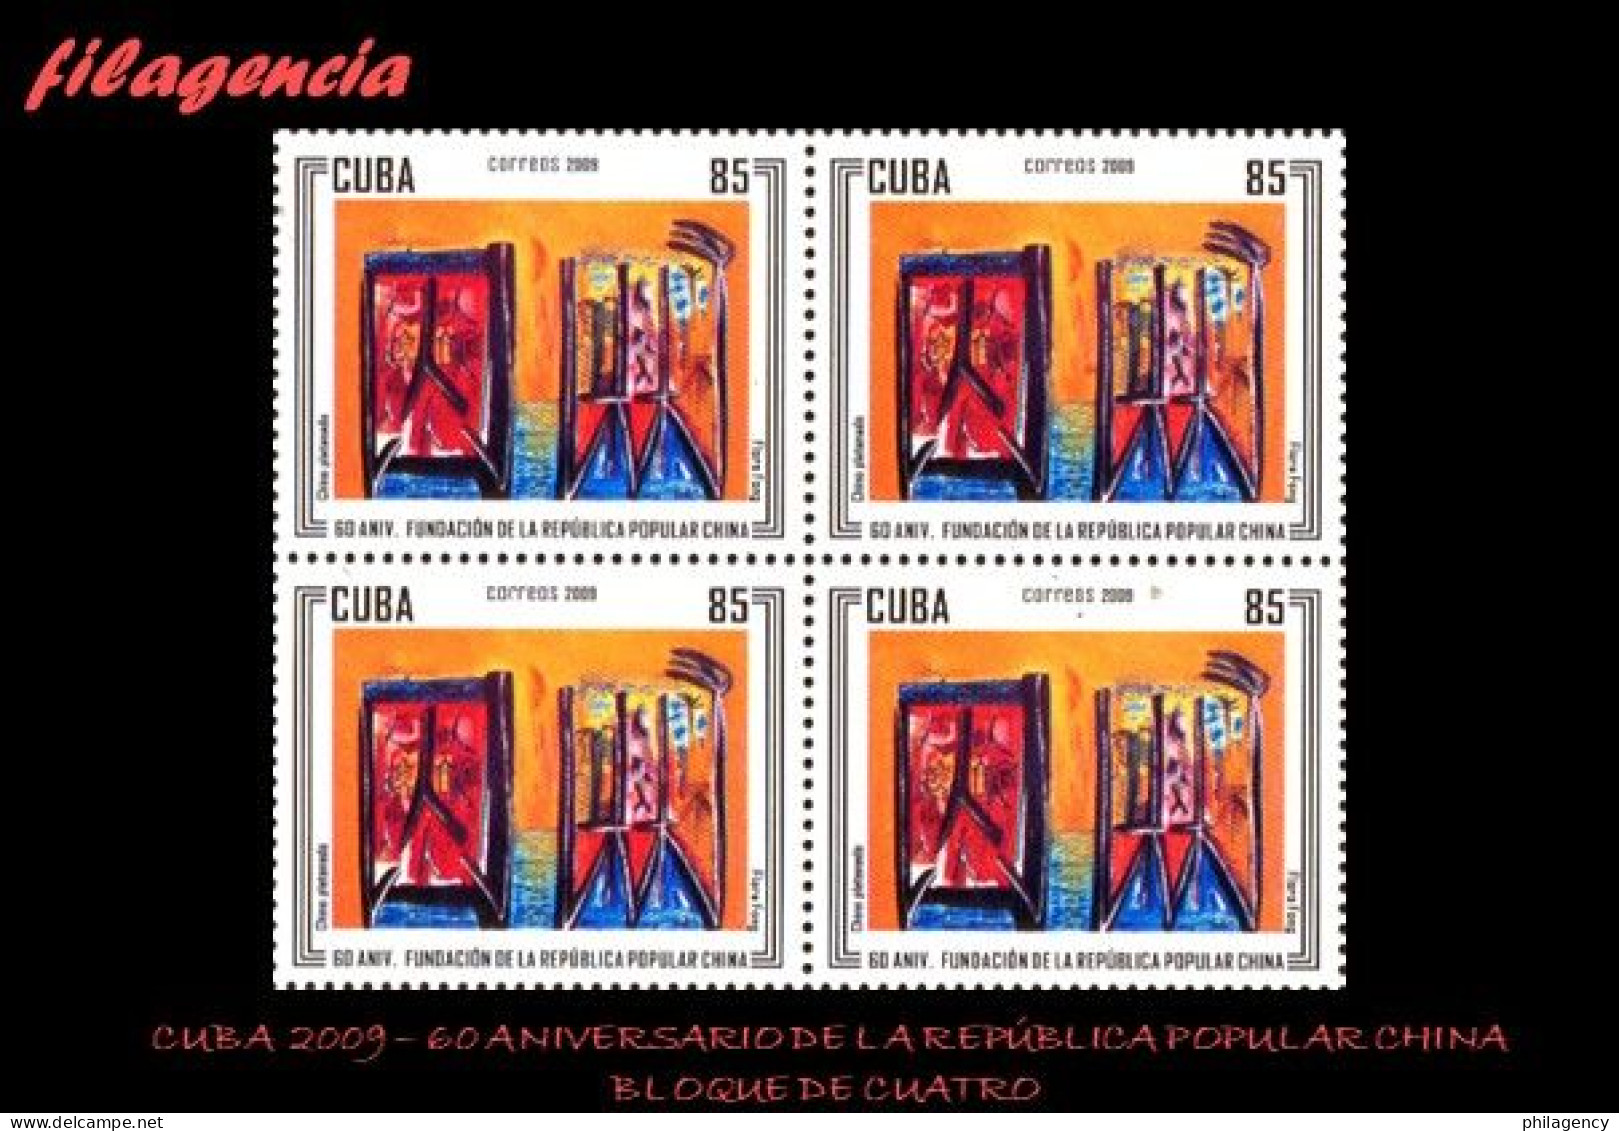 CUBA. BLOQUES DE CUATRO. 2009-29 60 ANIVERSARIO DE LA REPÚBLICA POPULAR CHINA - Unused Stamps